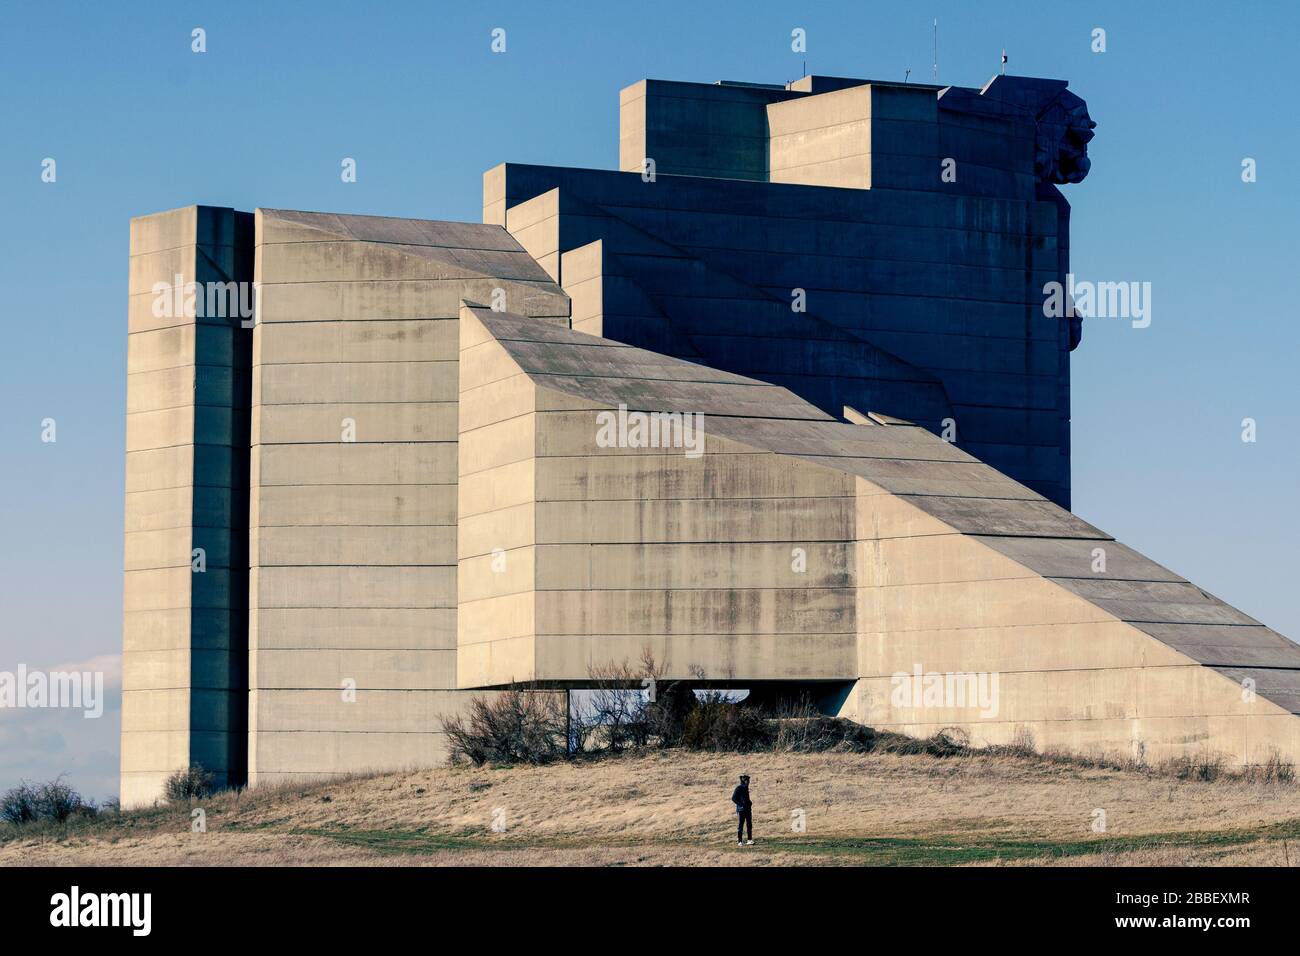 Erbaut, um der 3000-jährigen Geschichte zu gedenken. Denkmal für die Gründer Bulgariens, riesige betonkonstruktion aus der sowjetischen Zeit mit Blick auf Shumen Bulgarien Stockfoto